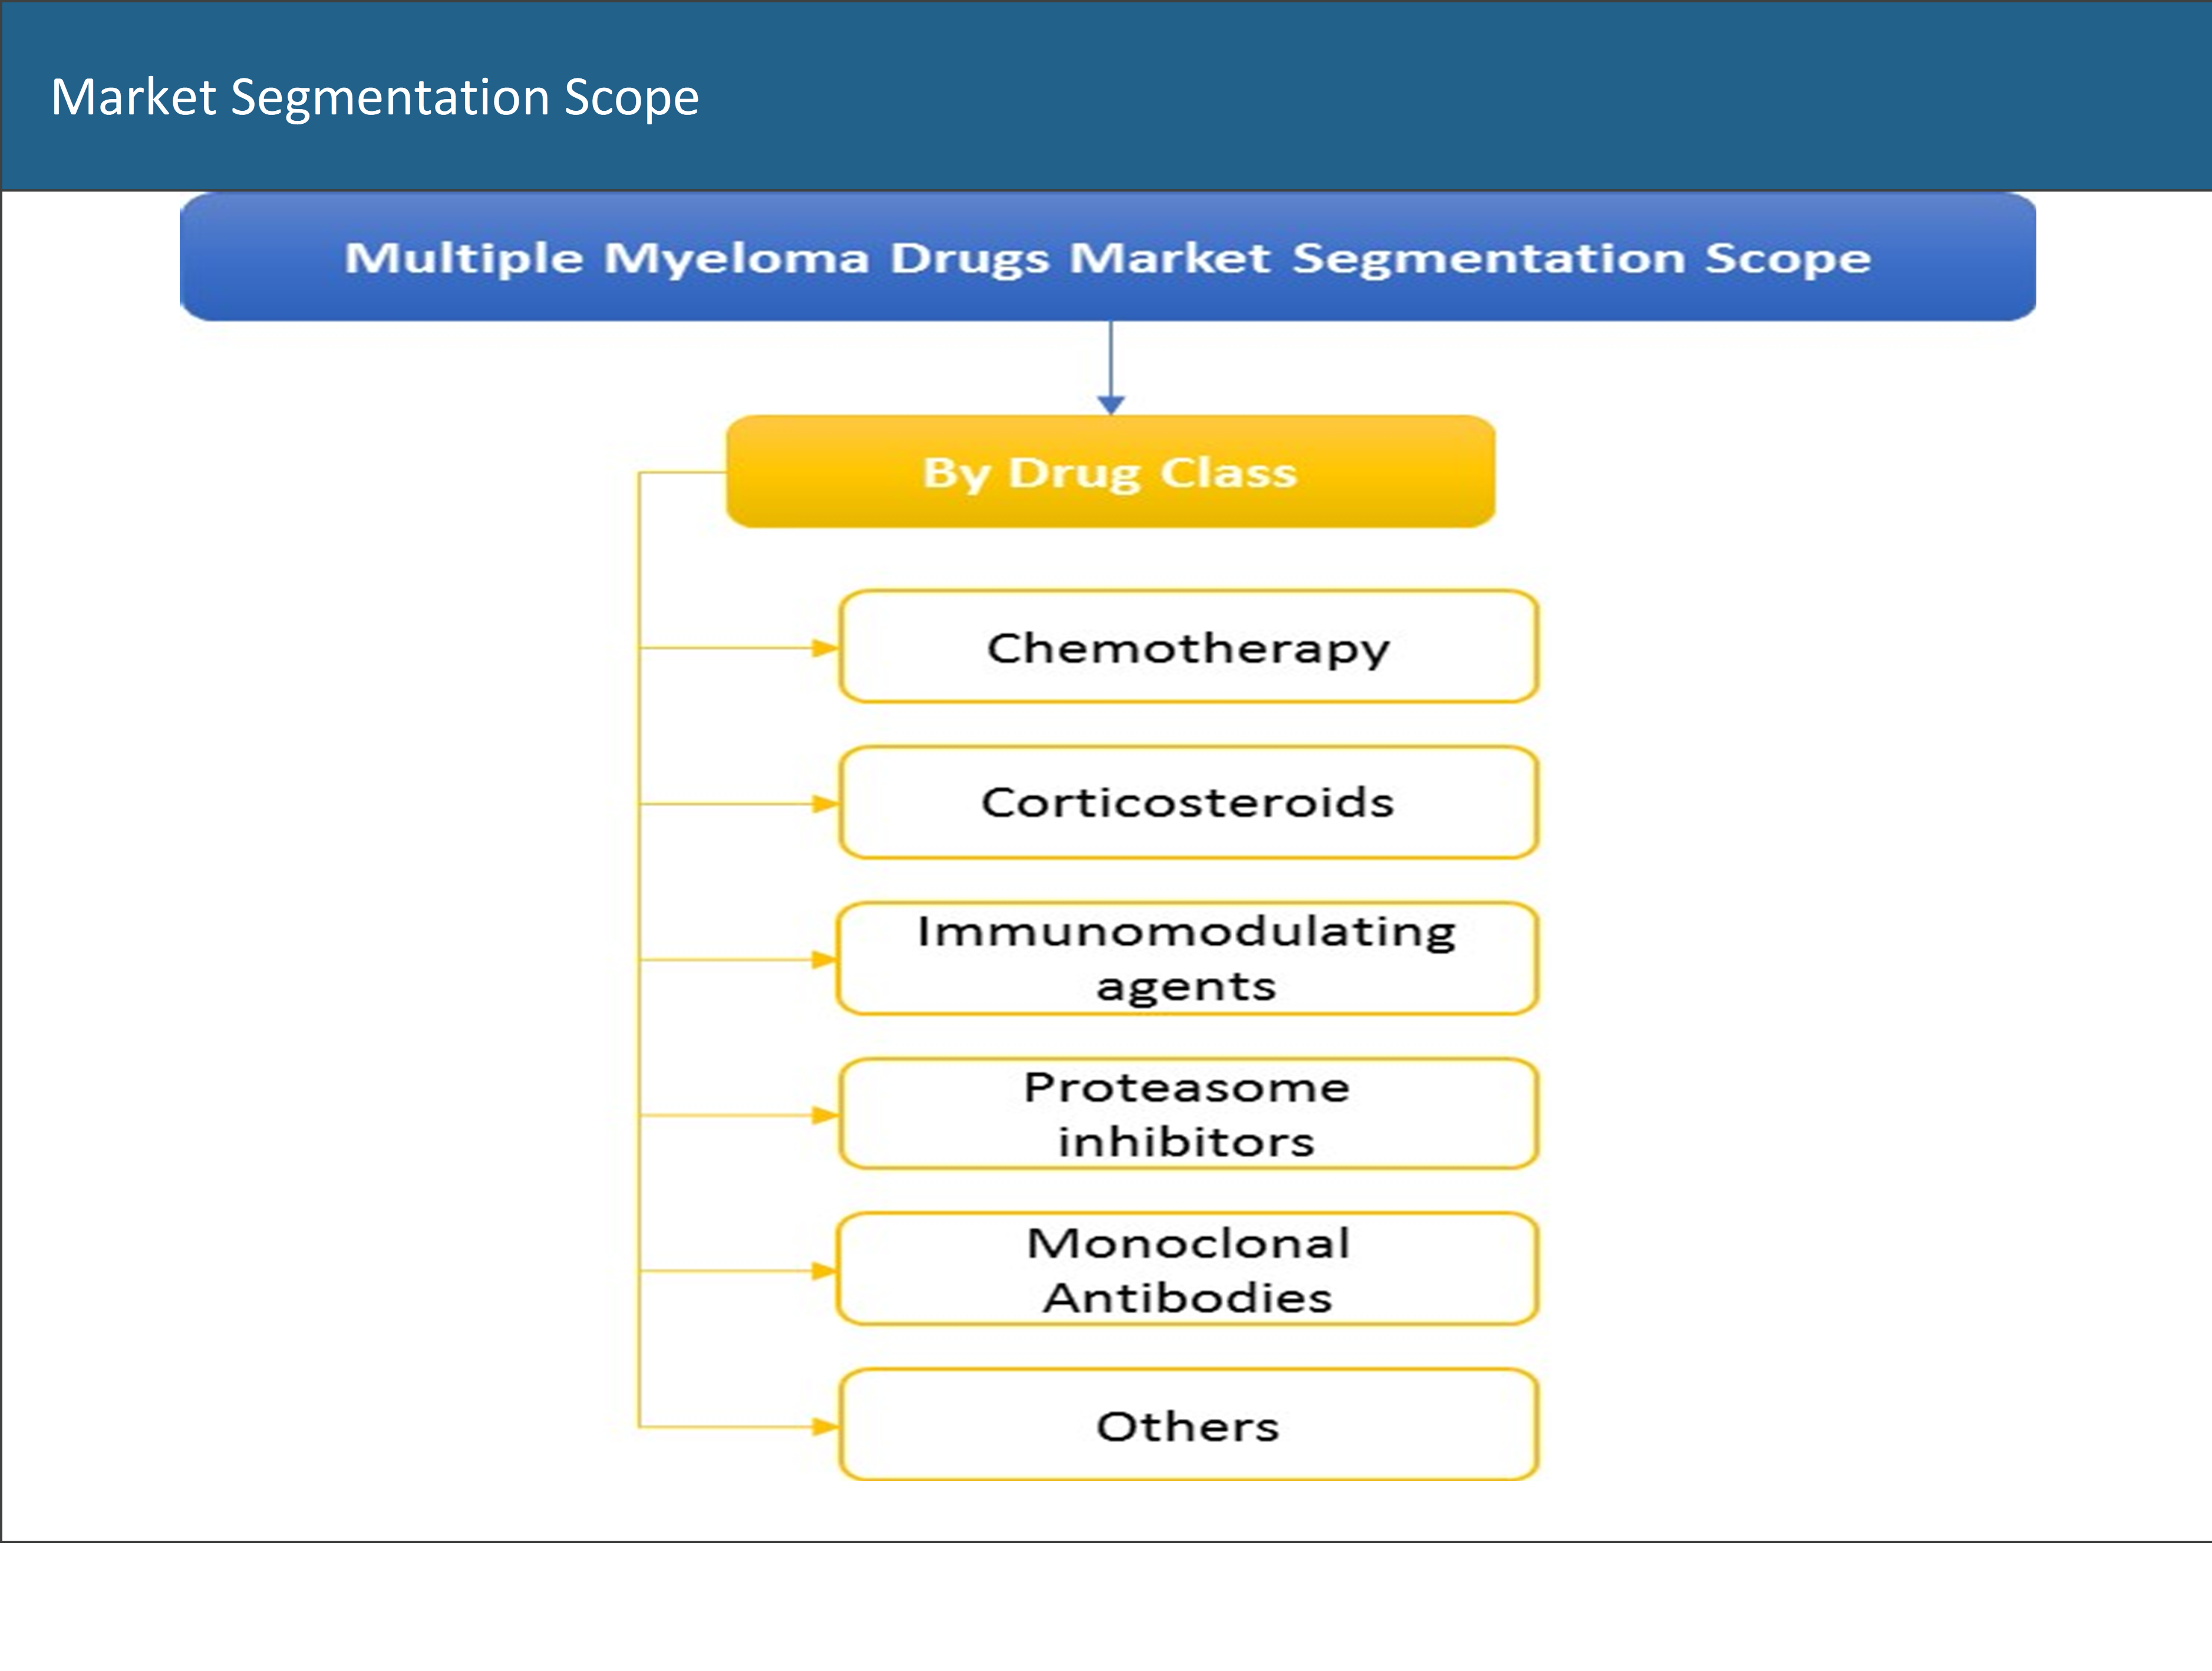 Global Multiple Myeloma Drugs Market Segmentation